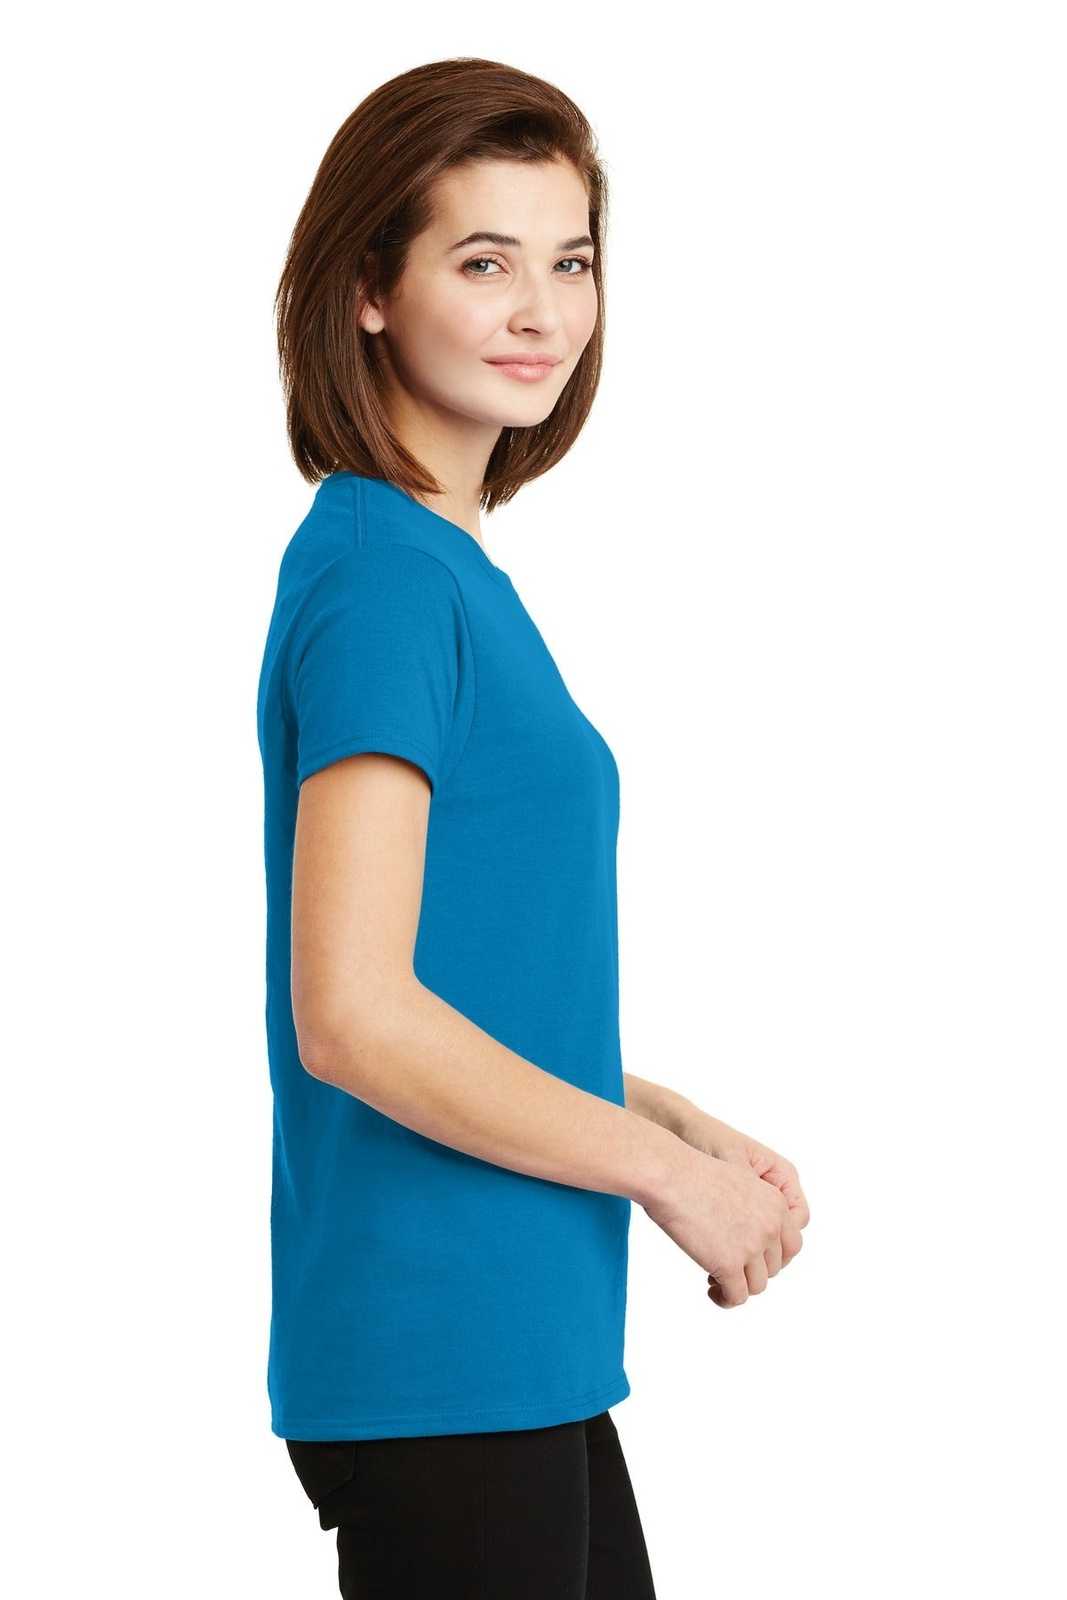 Gildan 2000L Ladies Ultra Cotton 100% Cotton T-Shirt - Sapphire - HIT a Double